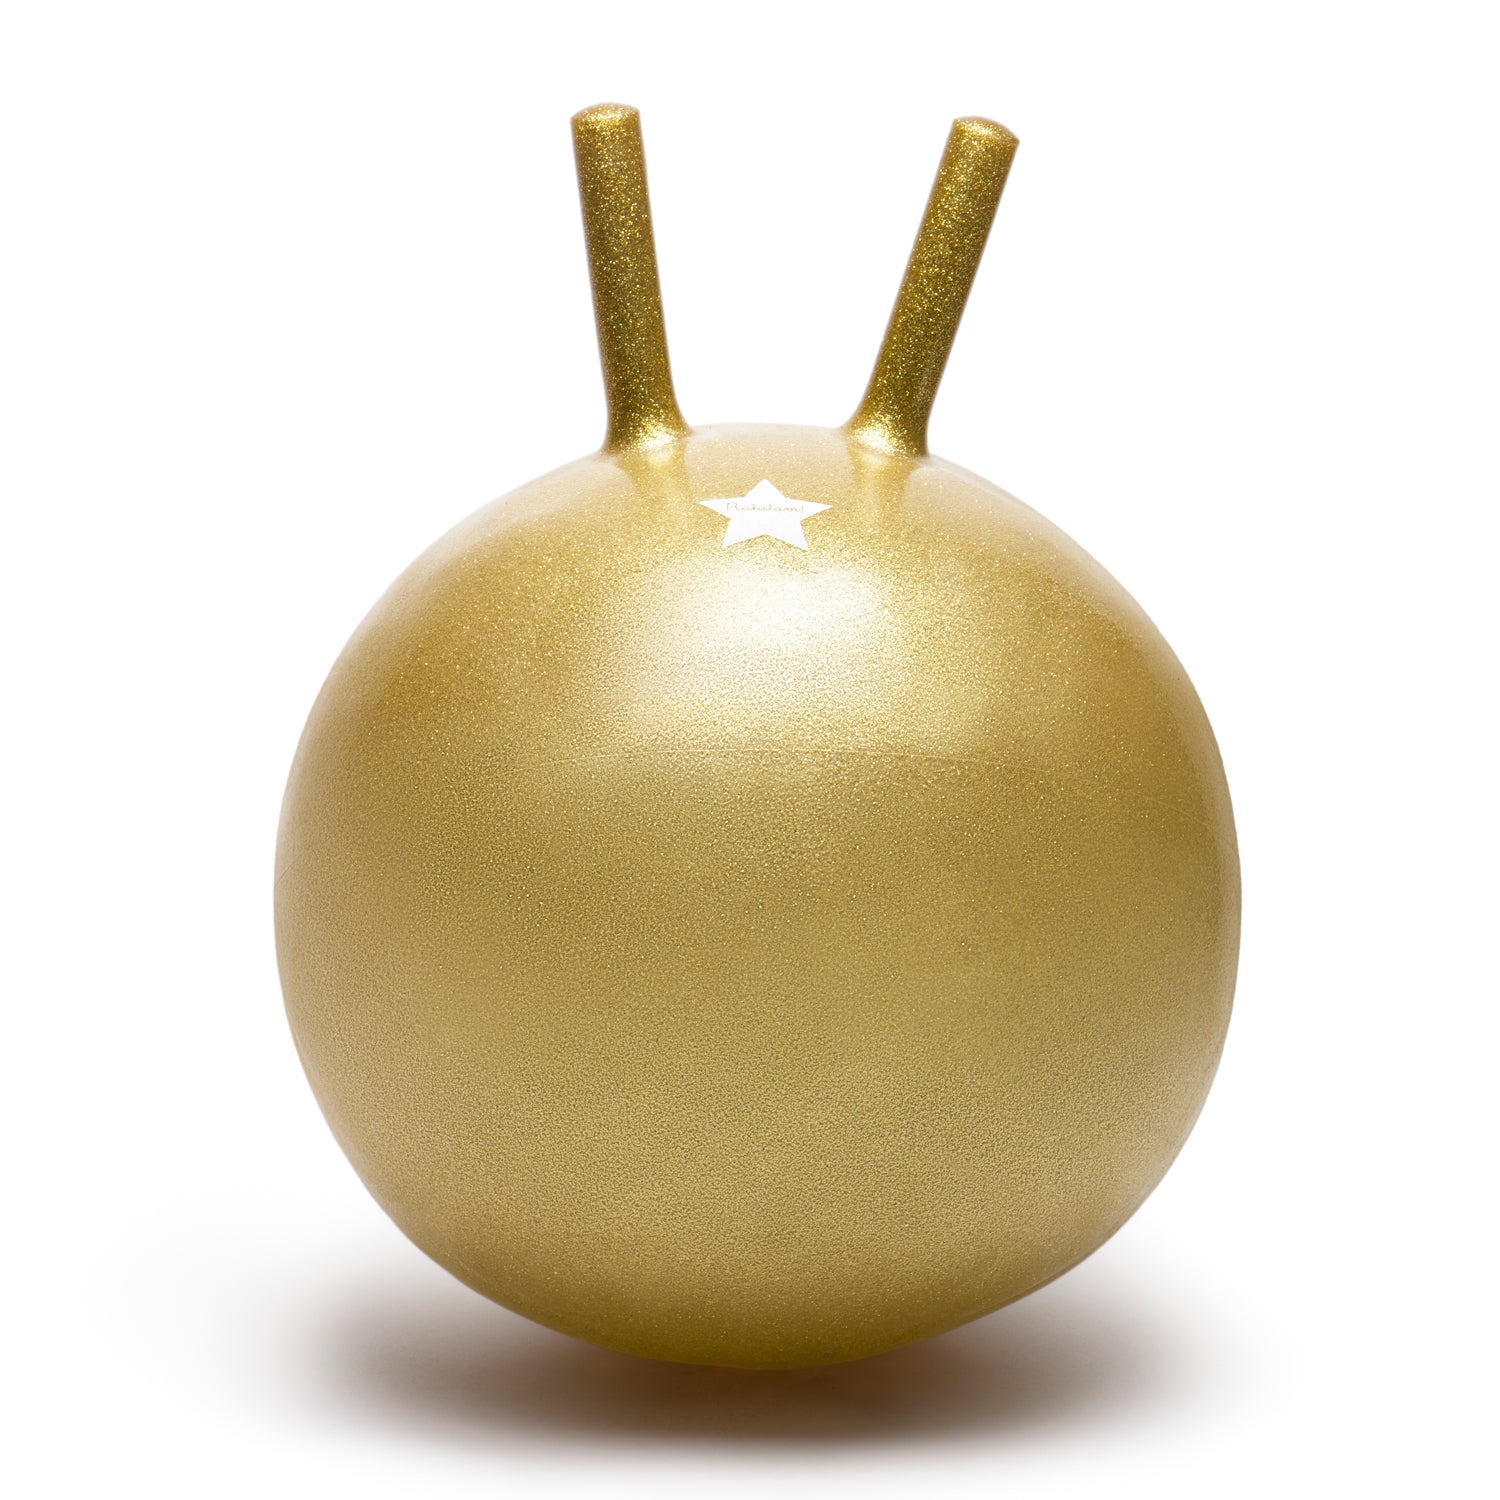 Ballon sauteur pour enfant des 2 ans. Rebondissant, doré, made in France. Ajustable à la taille de l'enfant. Ratatam Kids.